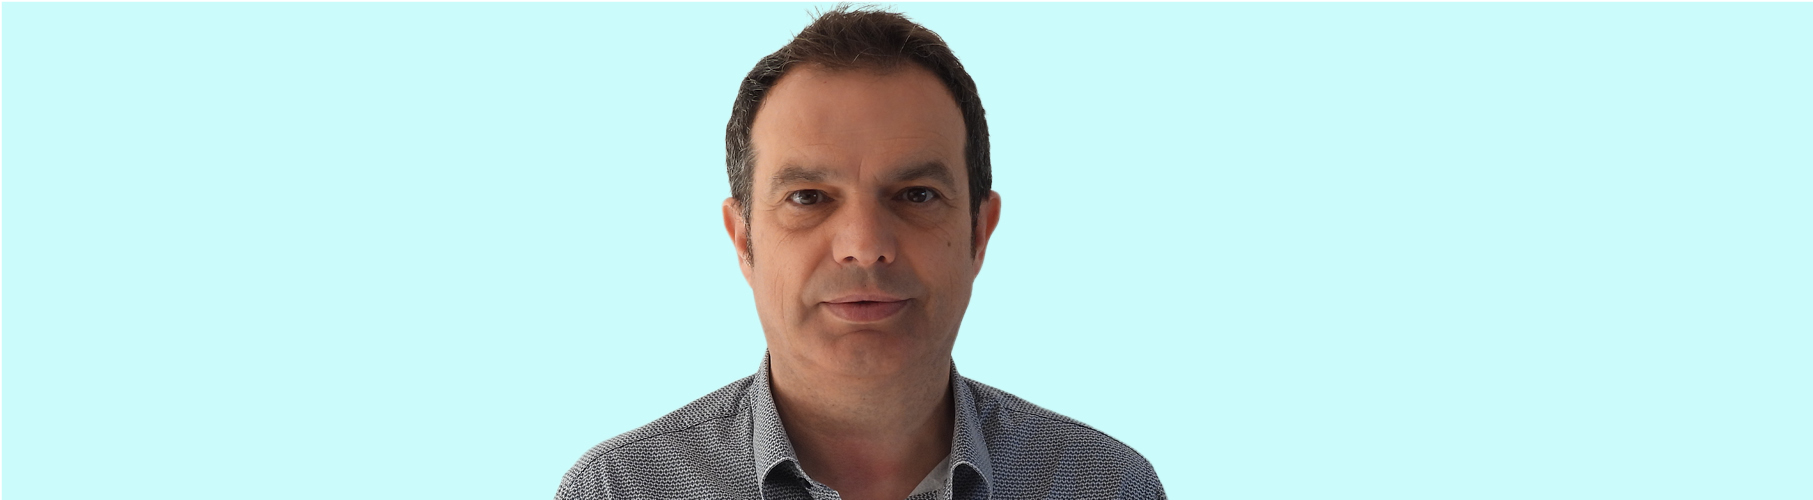 José Antonio Bonet, new director of Agrotecnio